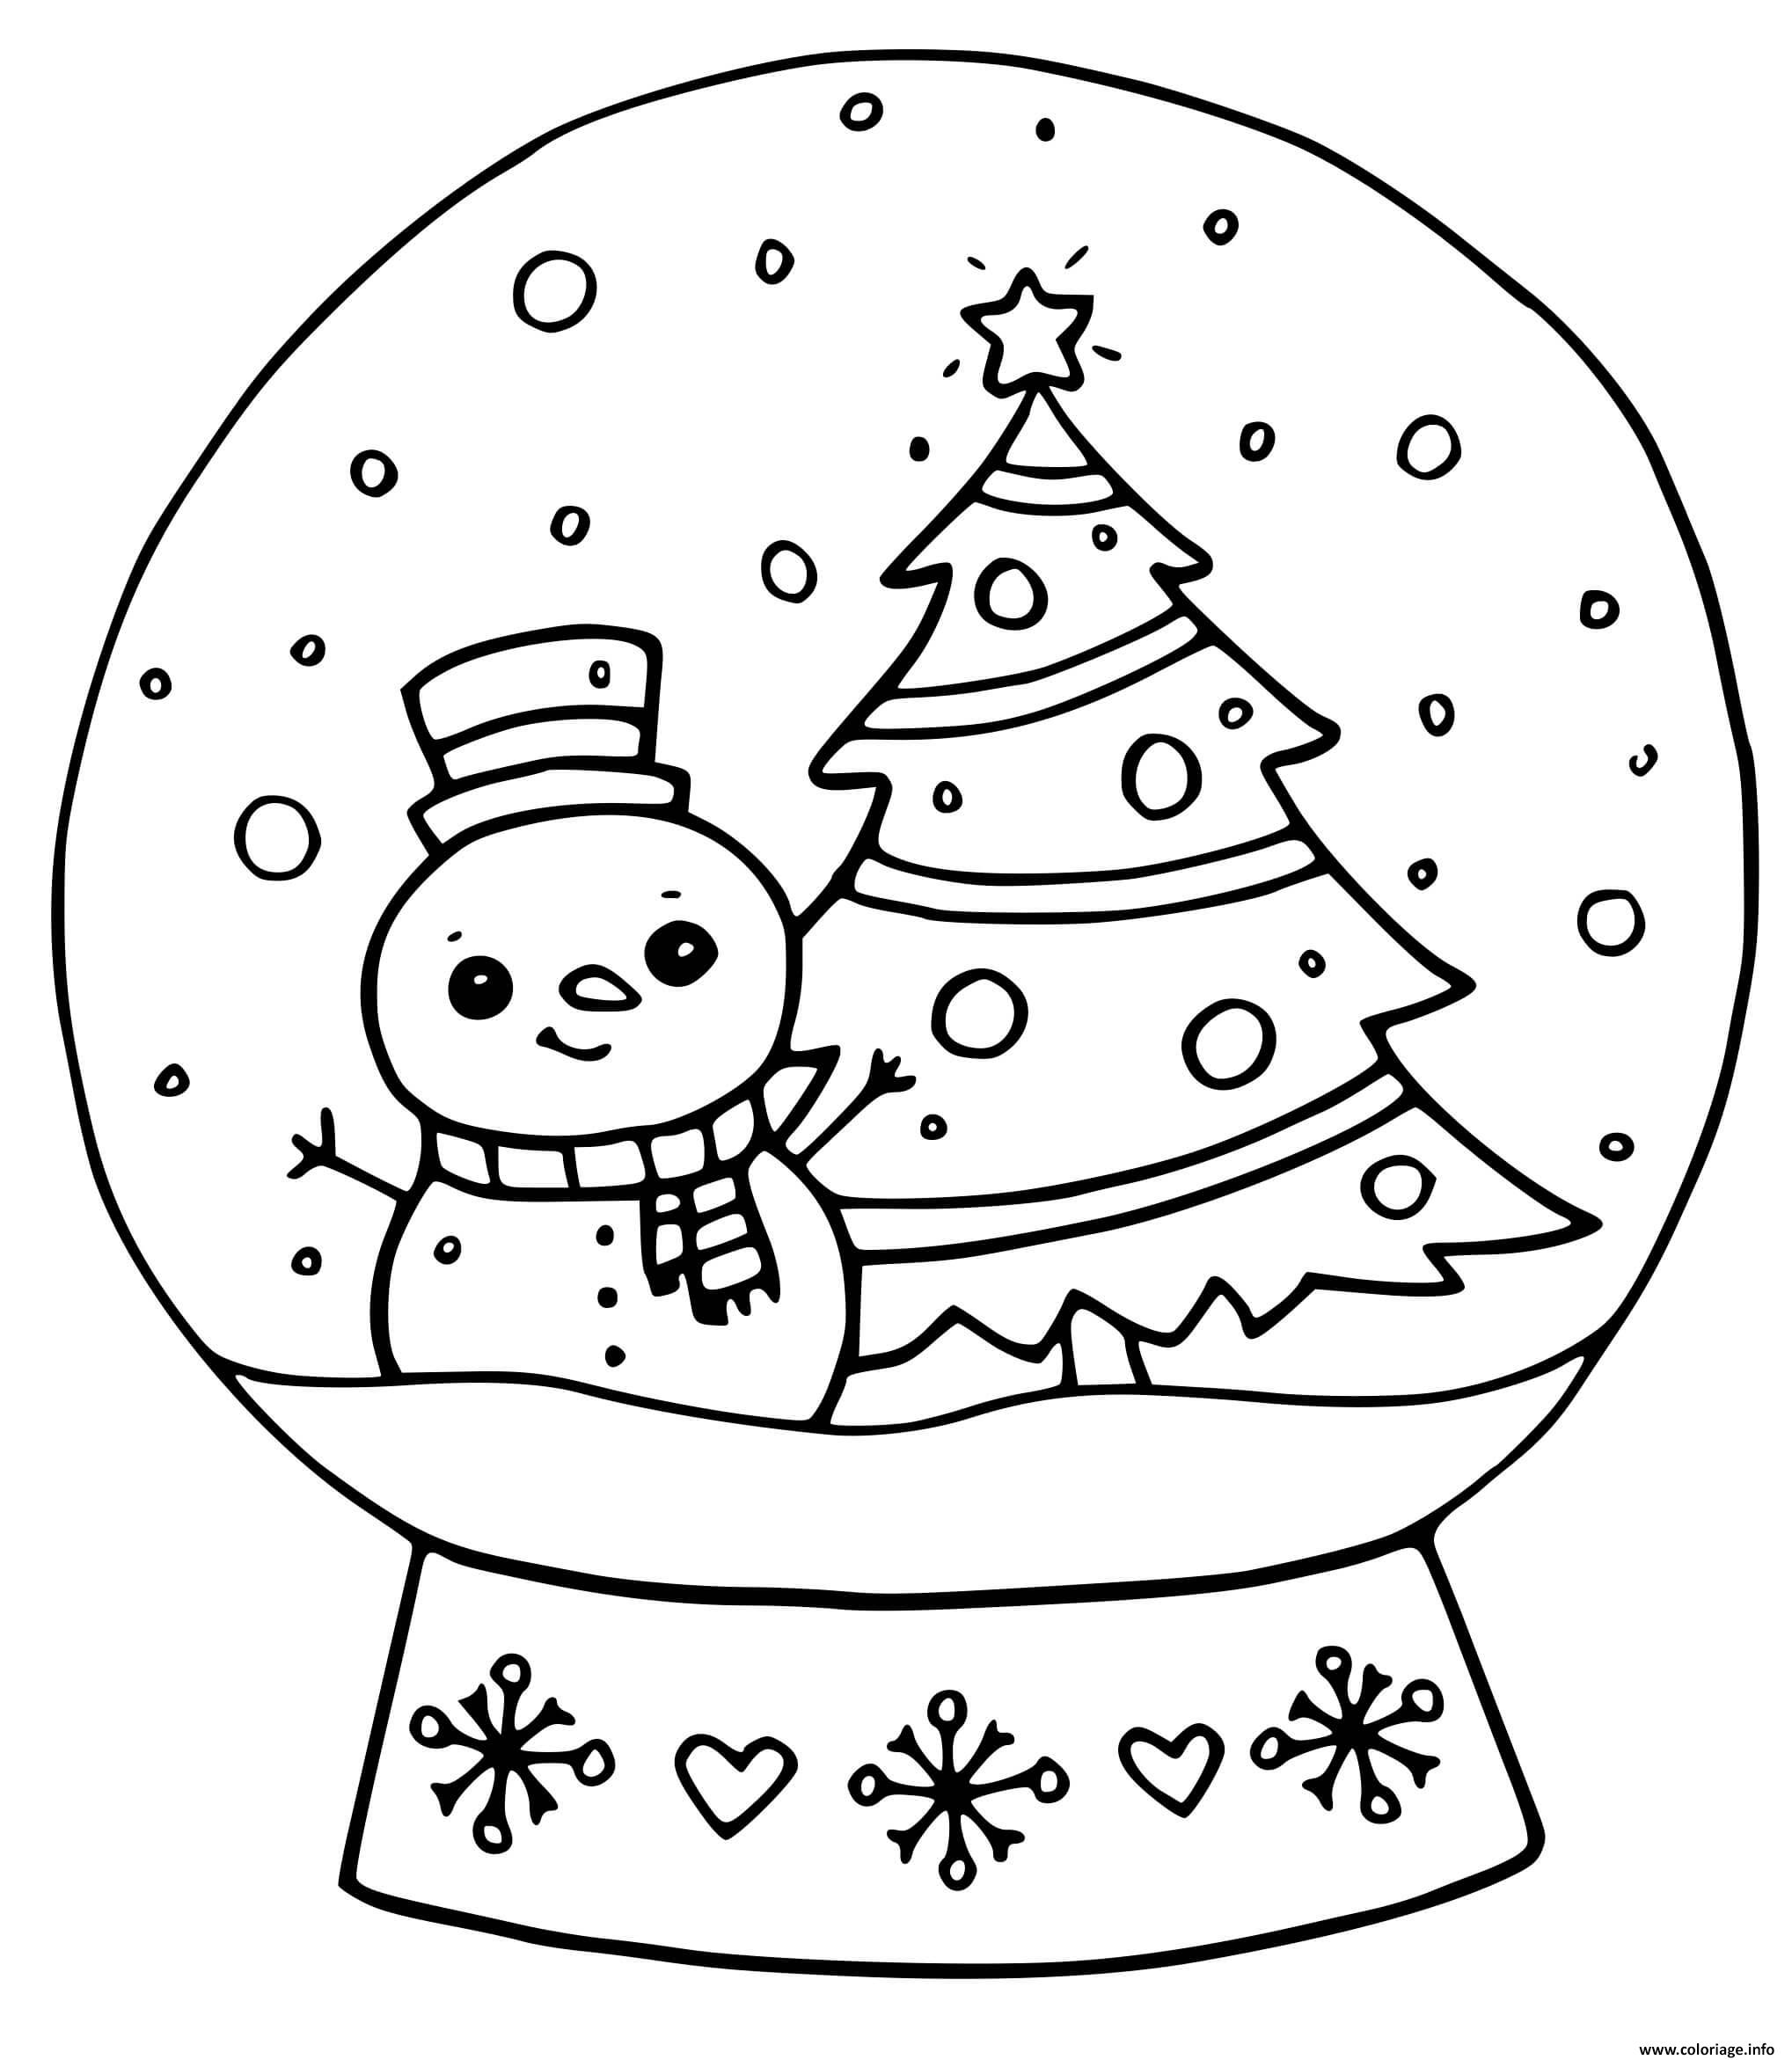 Dessin boule a neige decoration noel avec sapin et bonhomme de neige Coloriage Gratuit à Imprimer